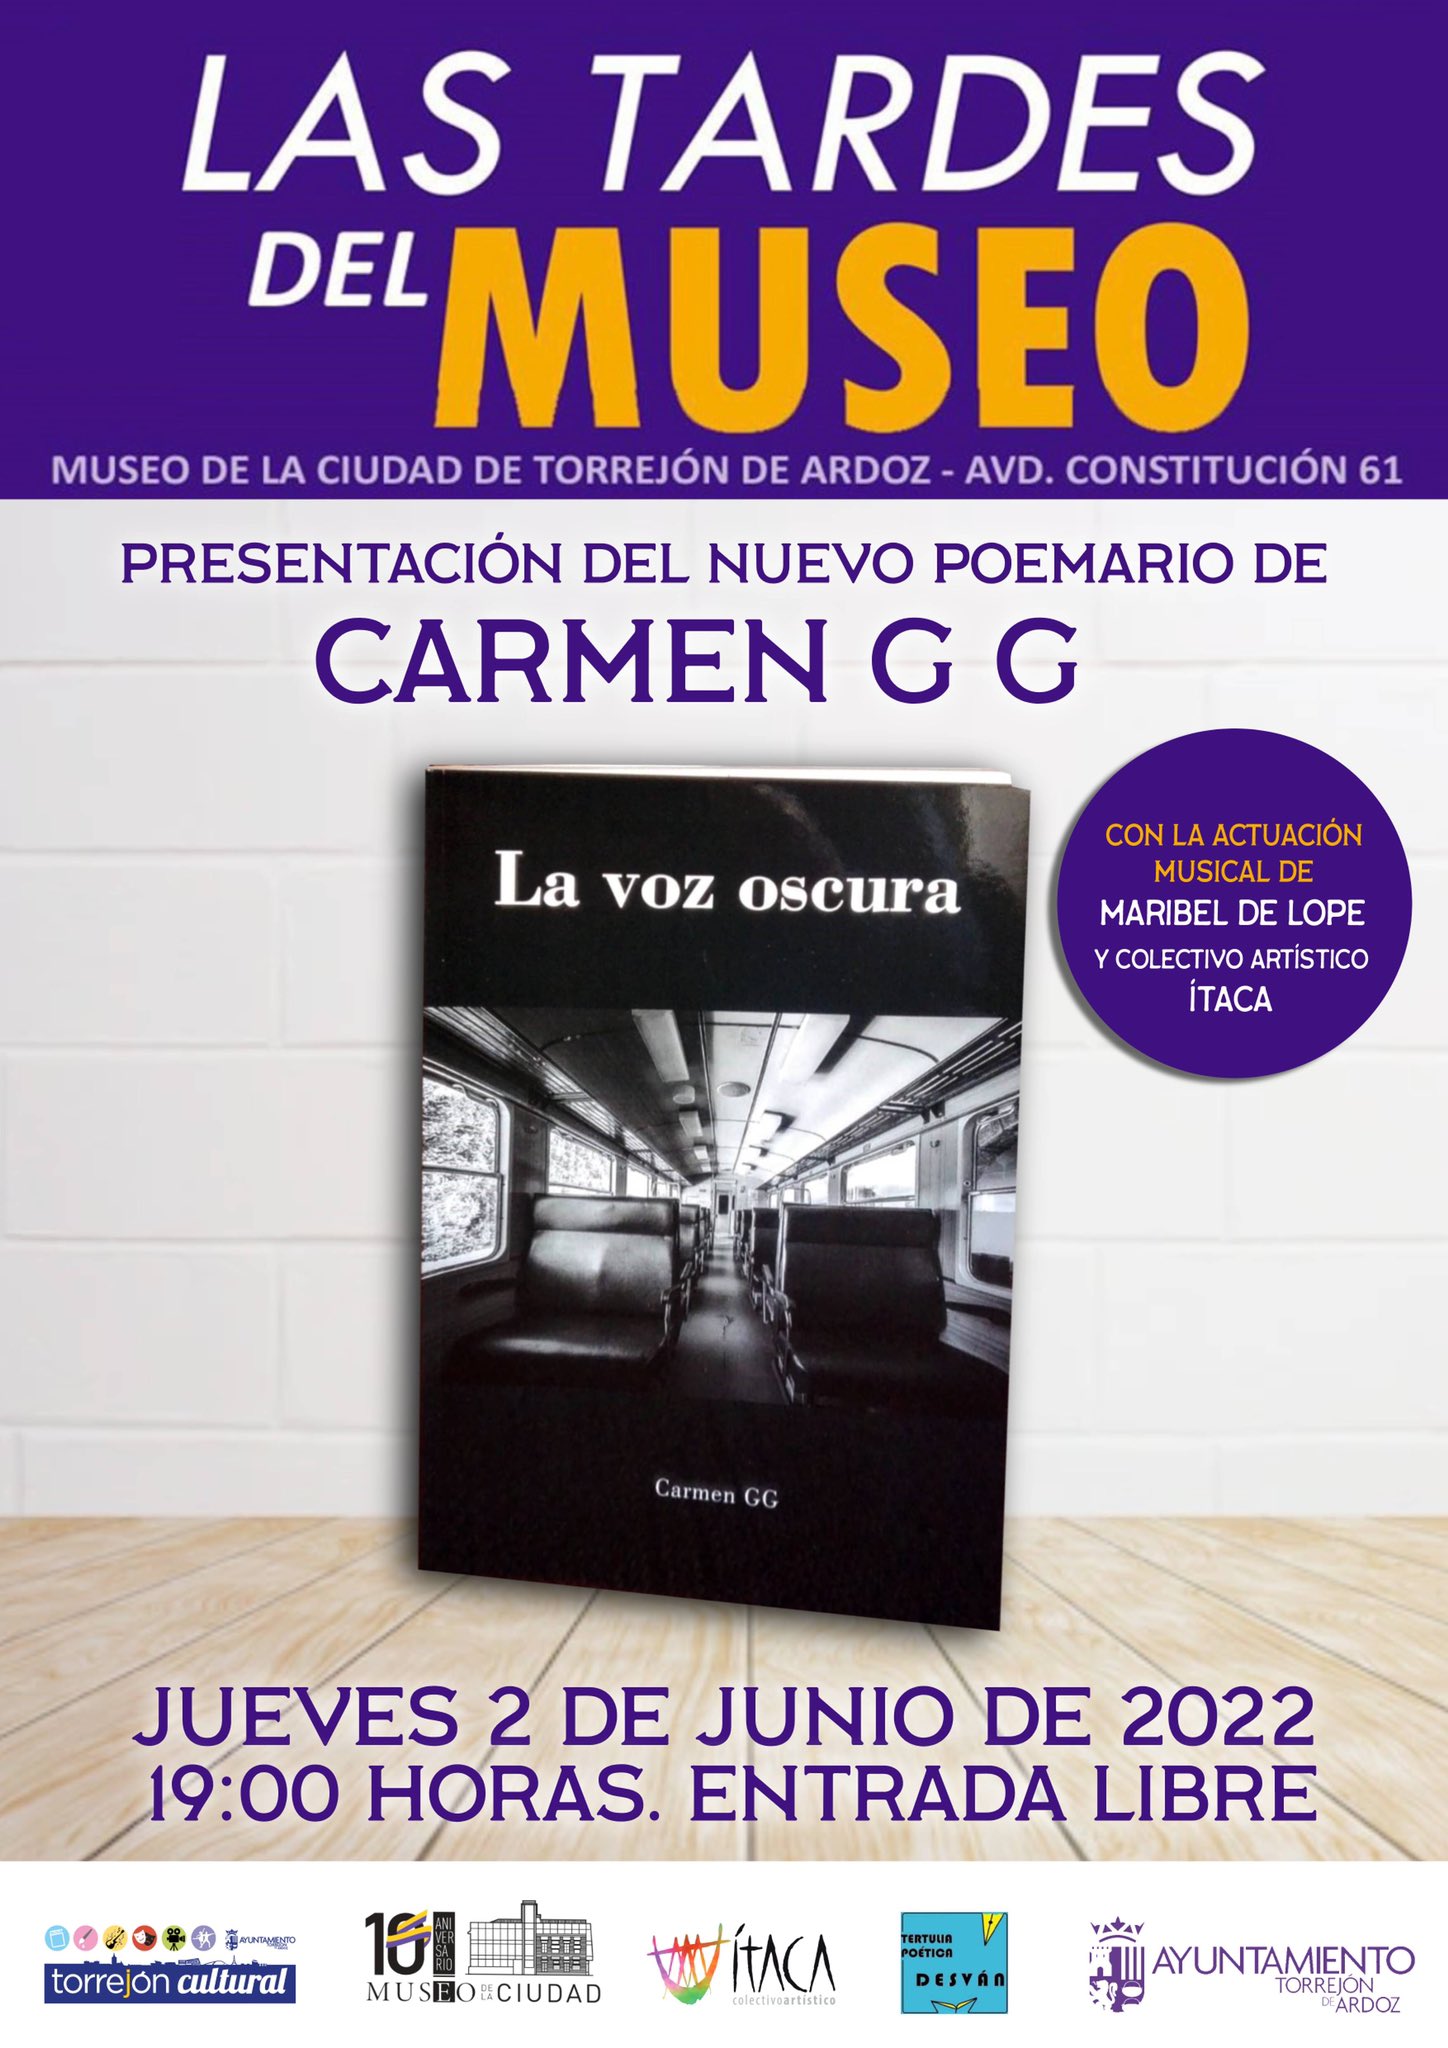 Las Tardes del Museo - Presentación del nuevo poemario de Carmen GG